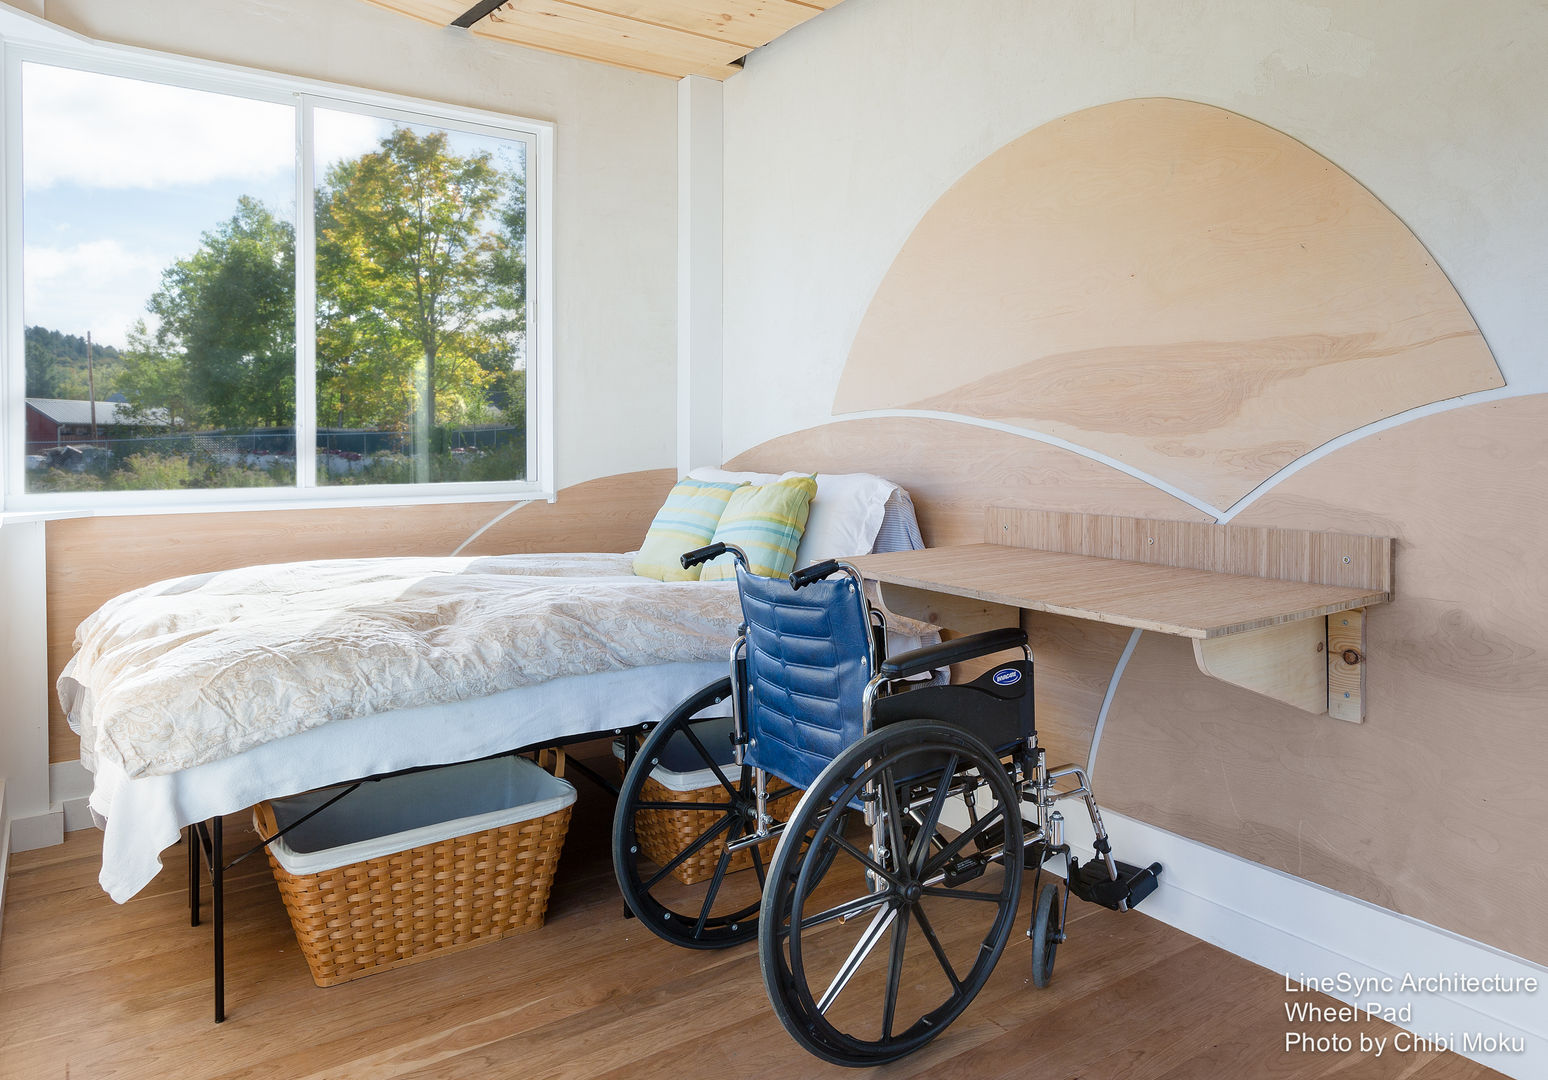 LineSync Architecture | Wheel Pad | Wilmington, VT, Chibi Moku Architectural Films Chibi Moku Architectural Films Dormitorios de estilo moderno Derivados de madera Transparente